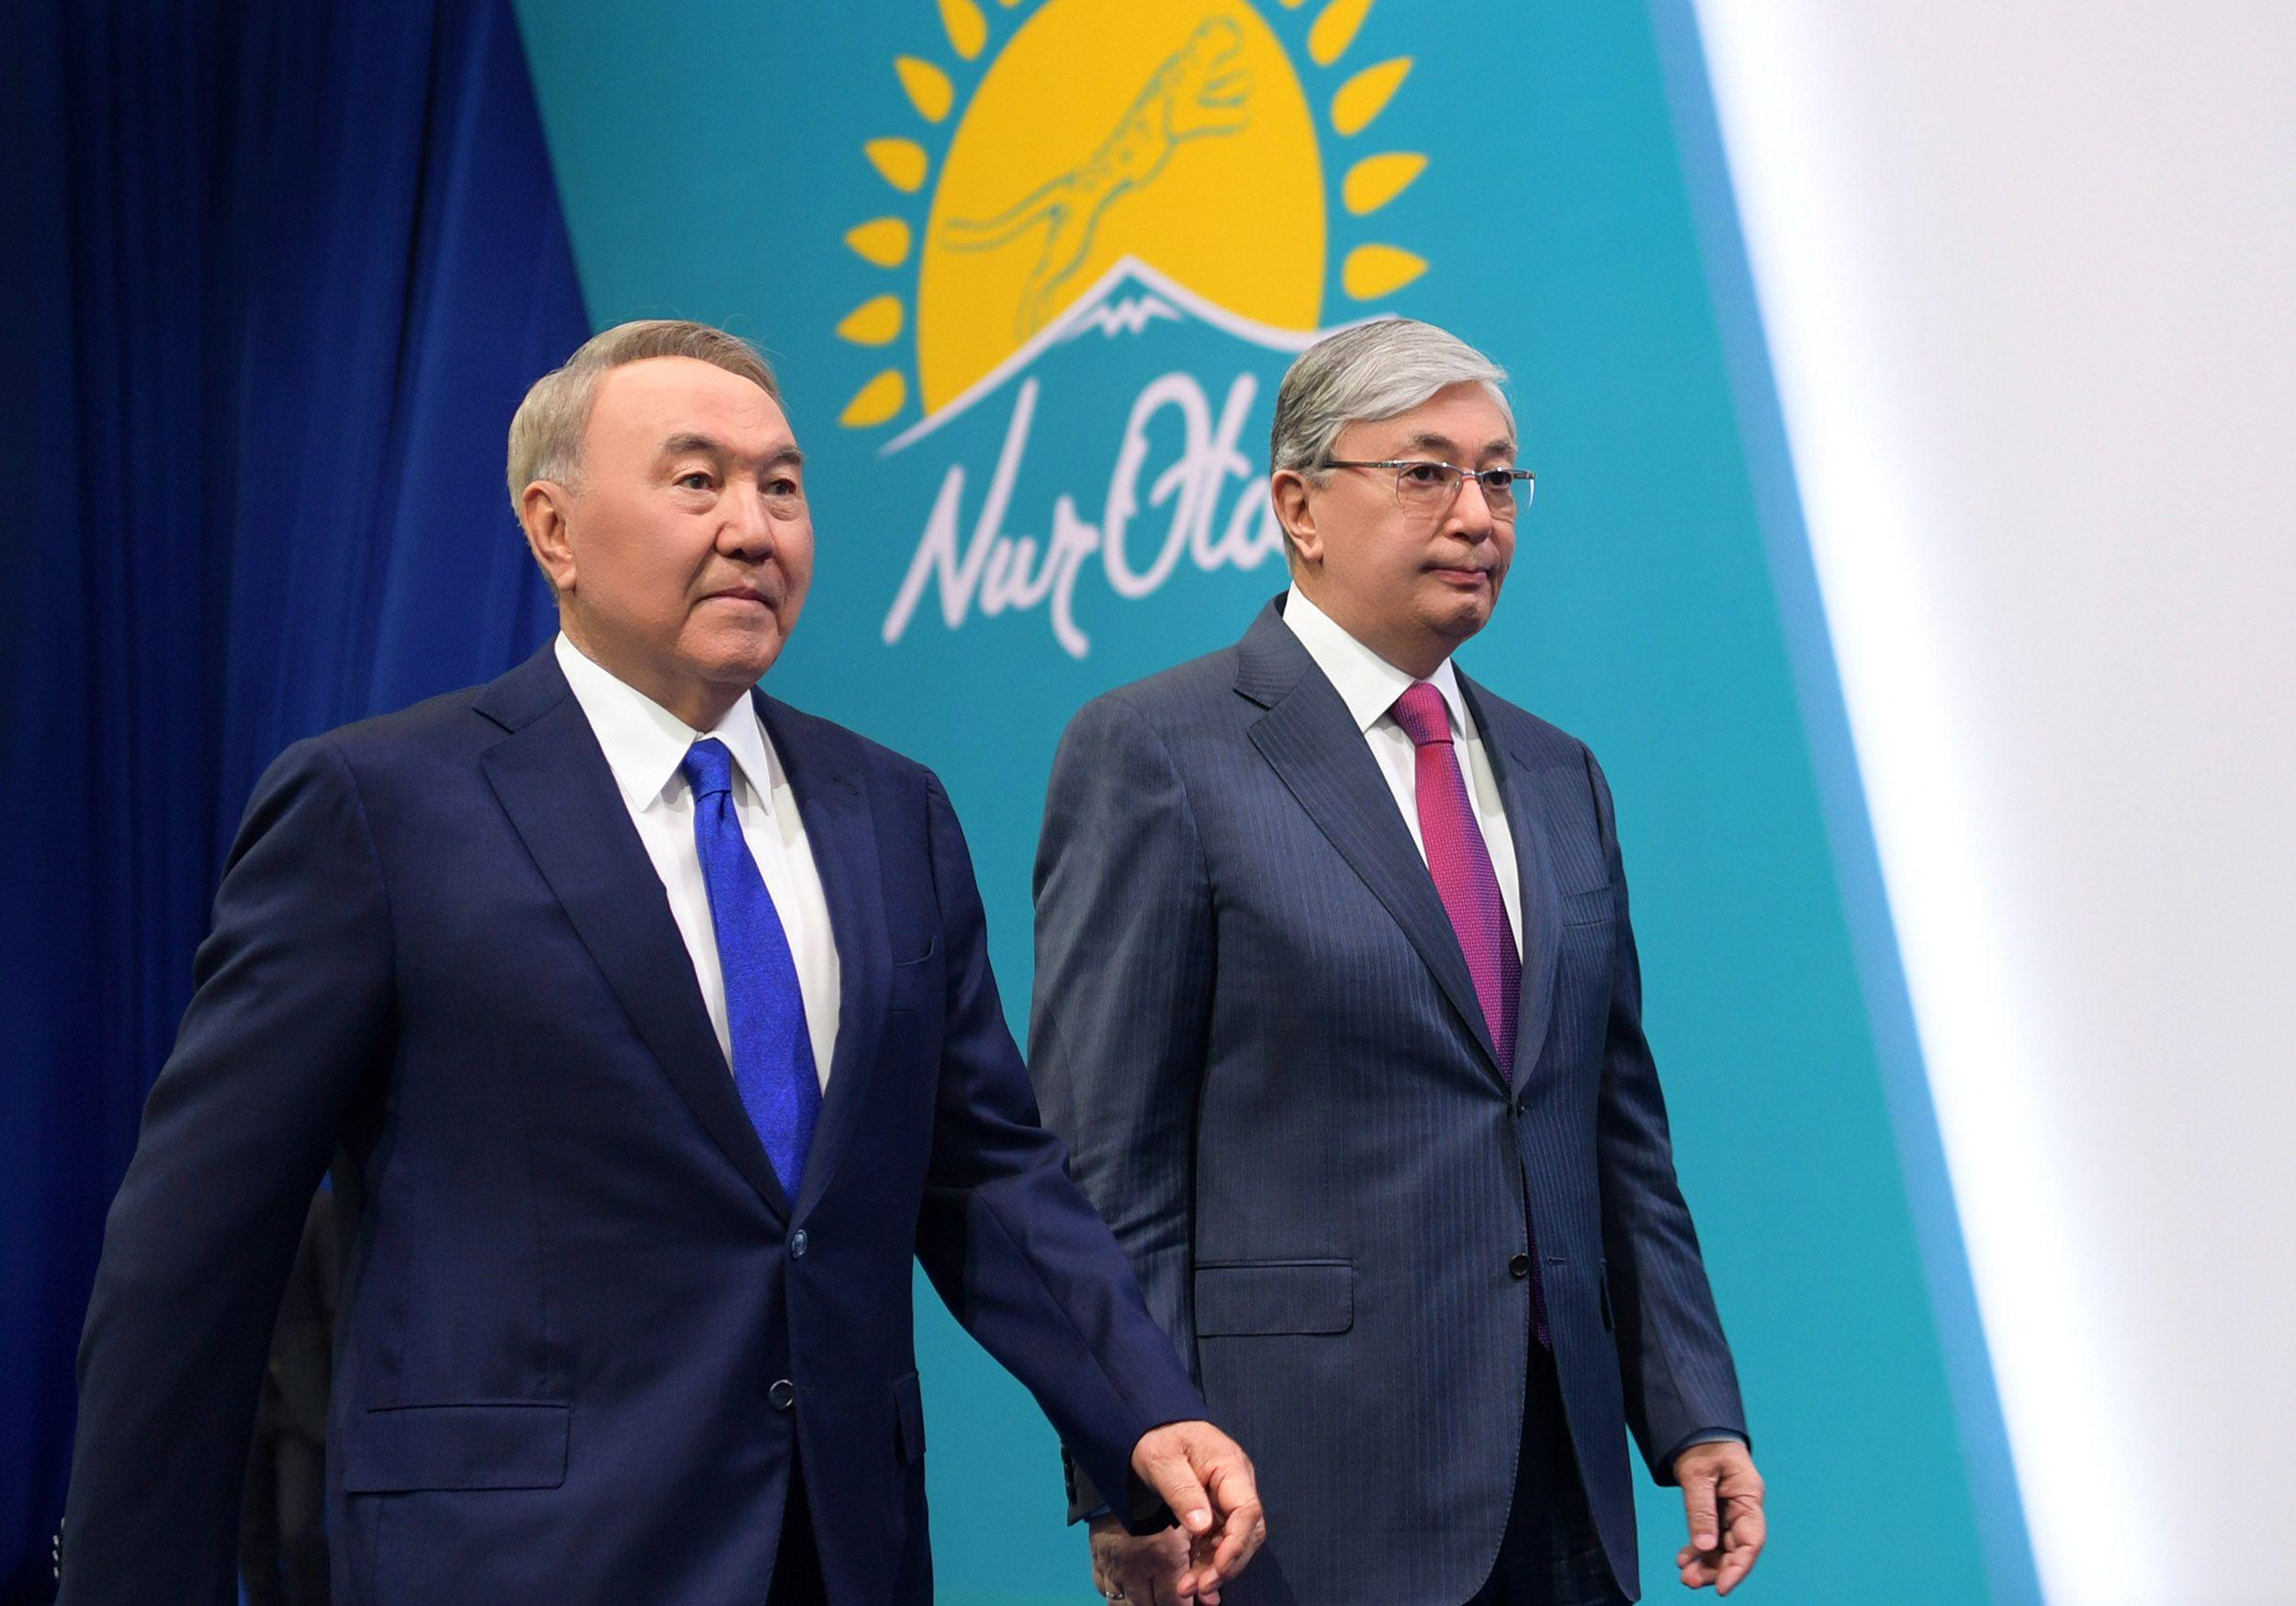 Партия Нур Отан может создать параллельную вертикаль власти в Казахстане – эксперт